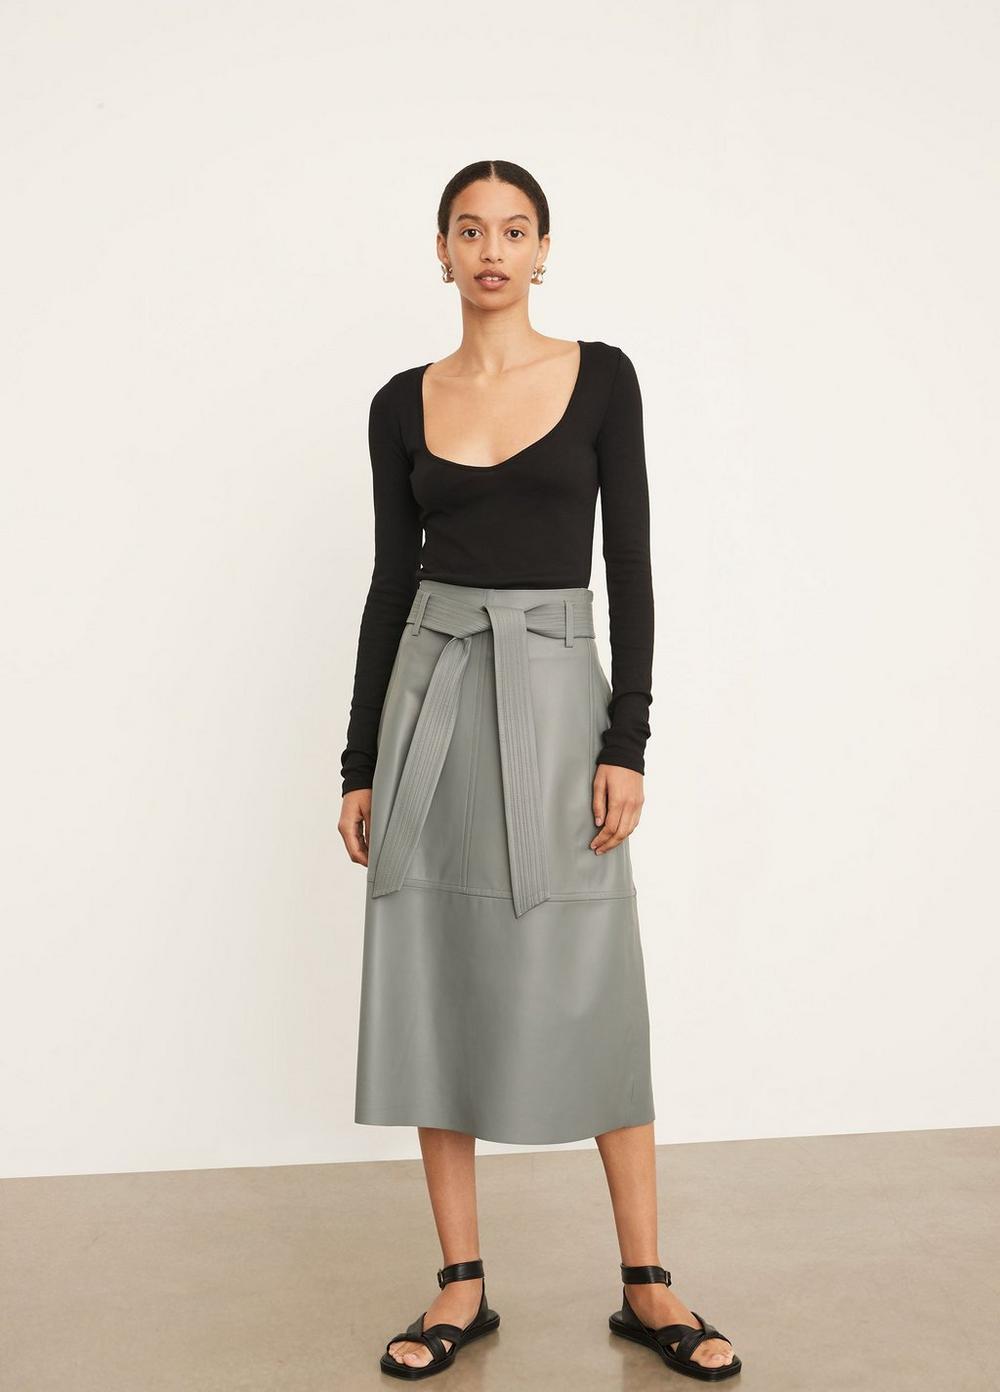 https://cdn.media.amplience.net/i/vince/V828030754_001/Stitched-Belt-Leather-Skirt?$large$